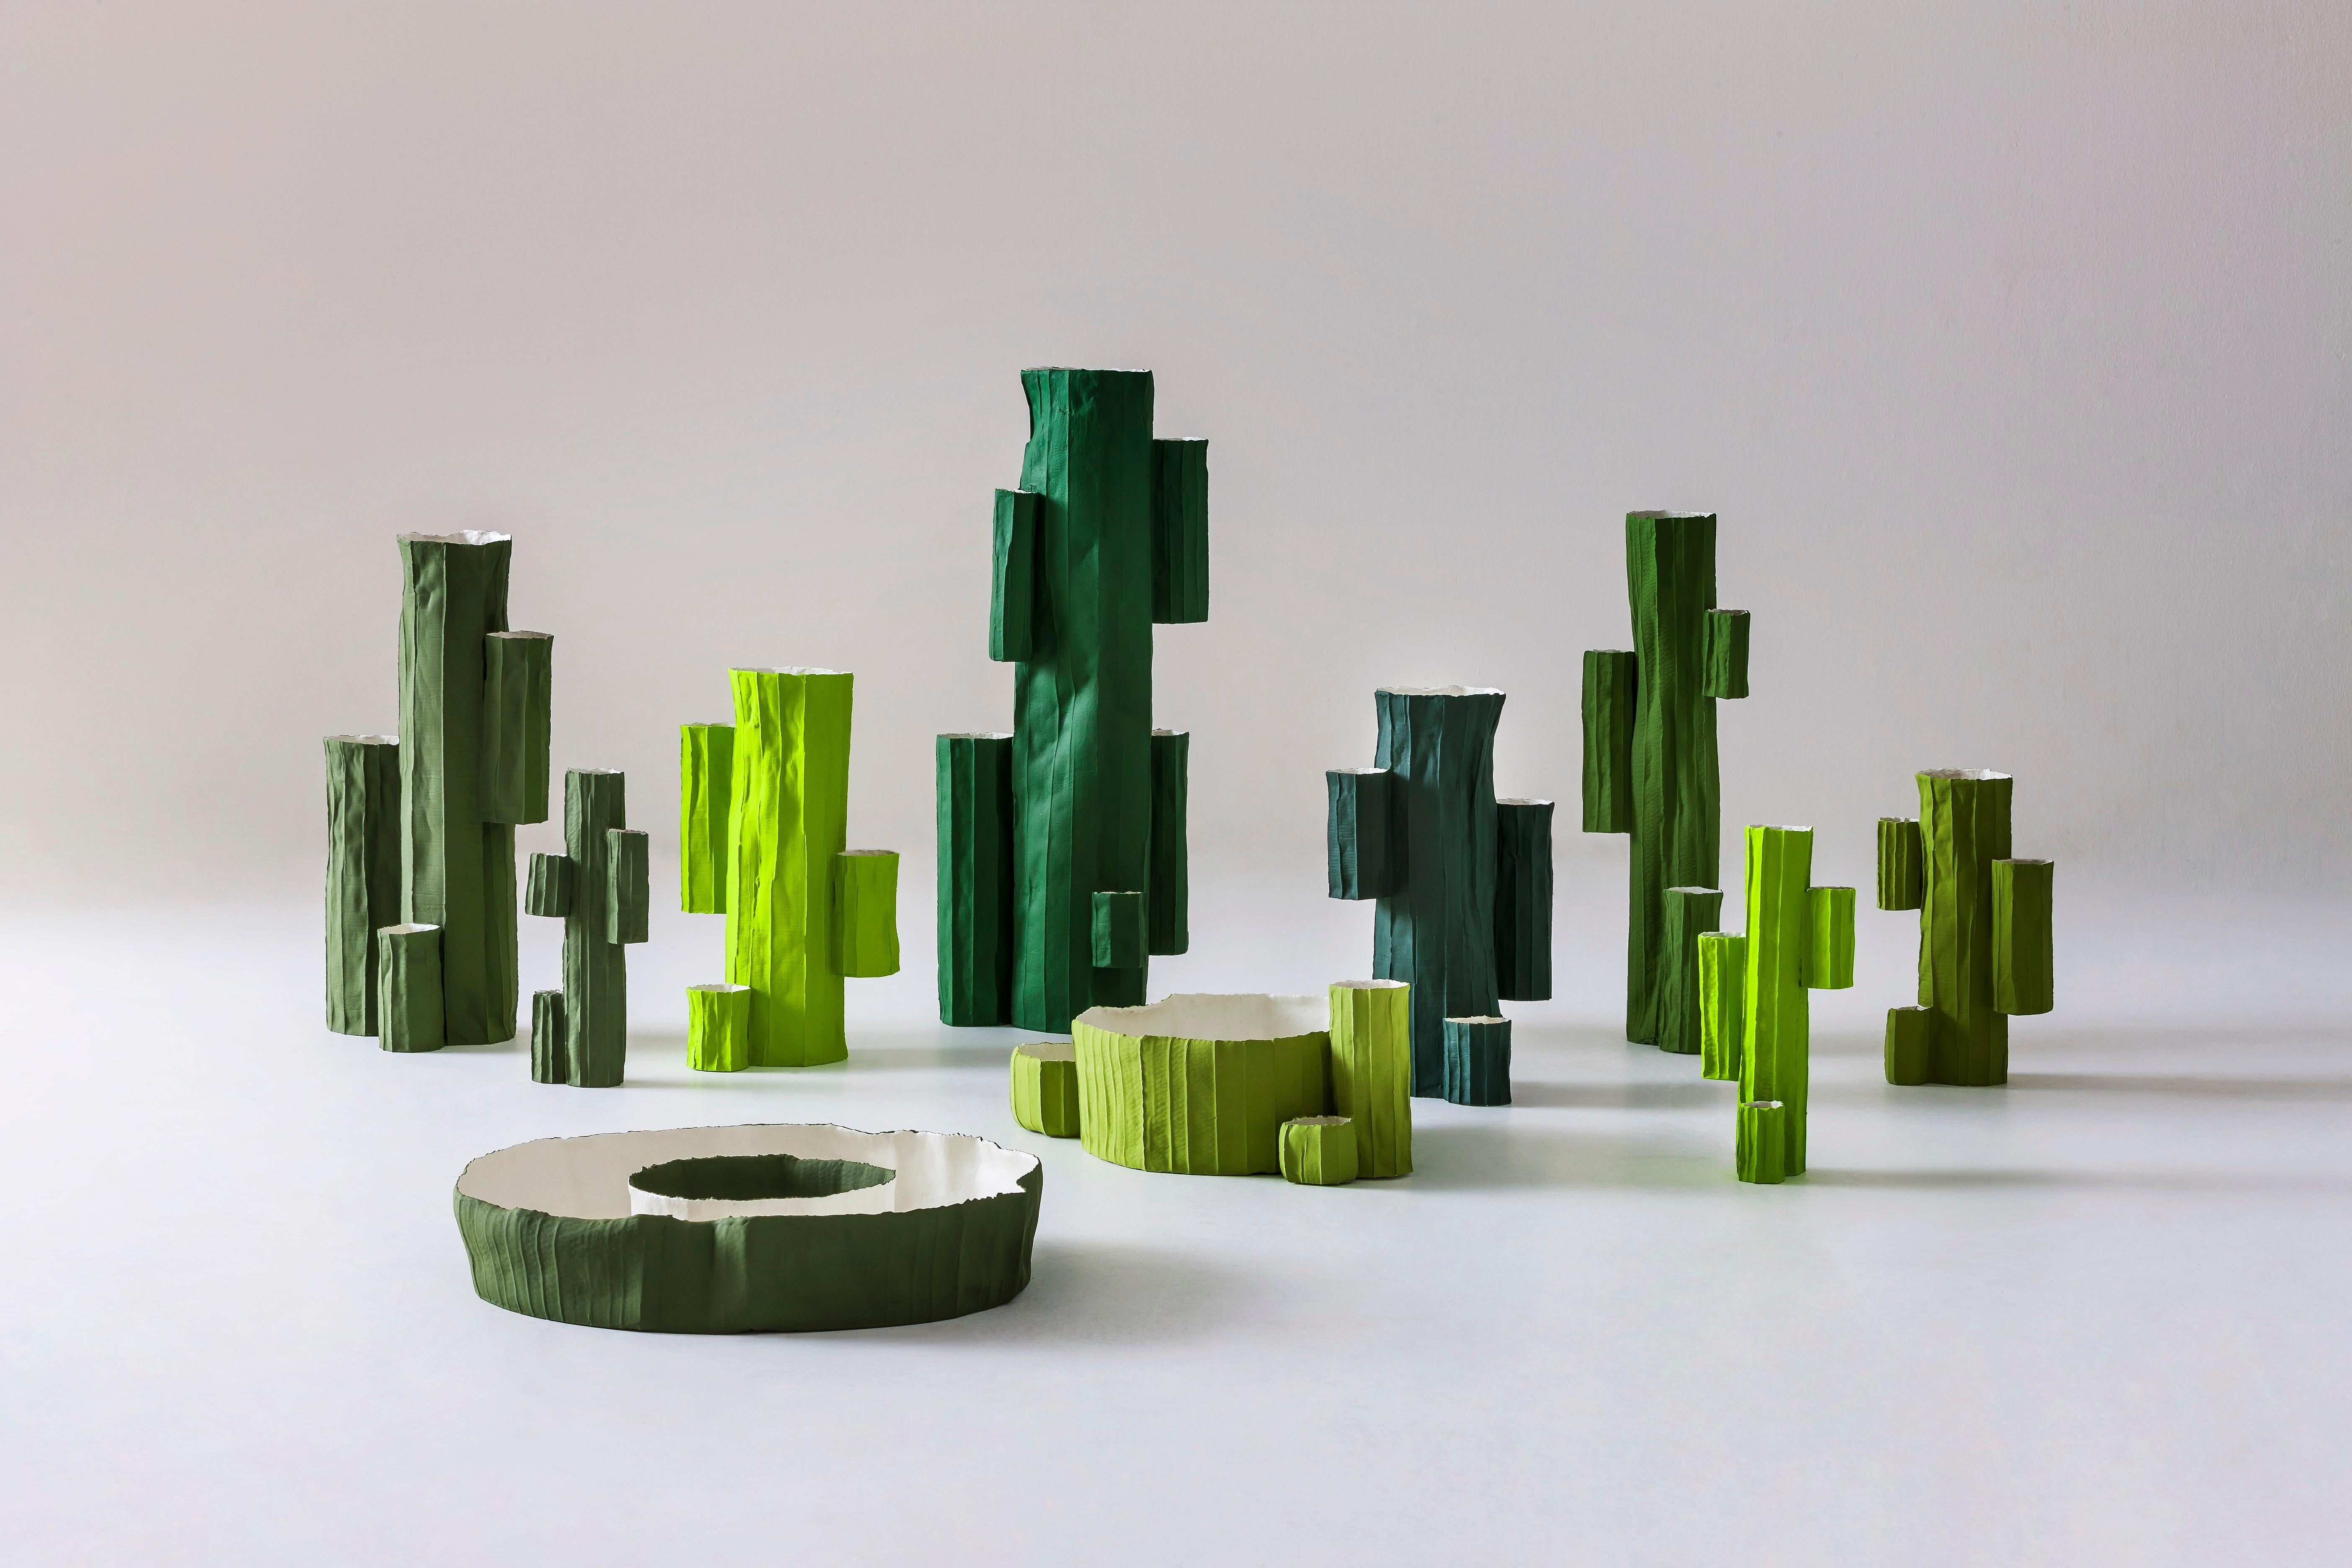 Die italienische Keramikerin Paola Paronetto lässt sich für ihre Dekorationsobjekte der Serie Cactus von der Schönheit und Harmonie der Natur inspirieren. Diese einzigartige Vase wird in Handarbeit aus Papierton hergestellt, einem speziellen